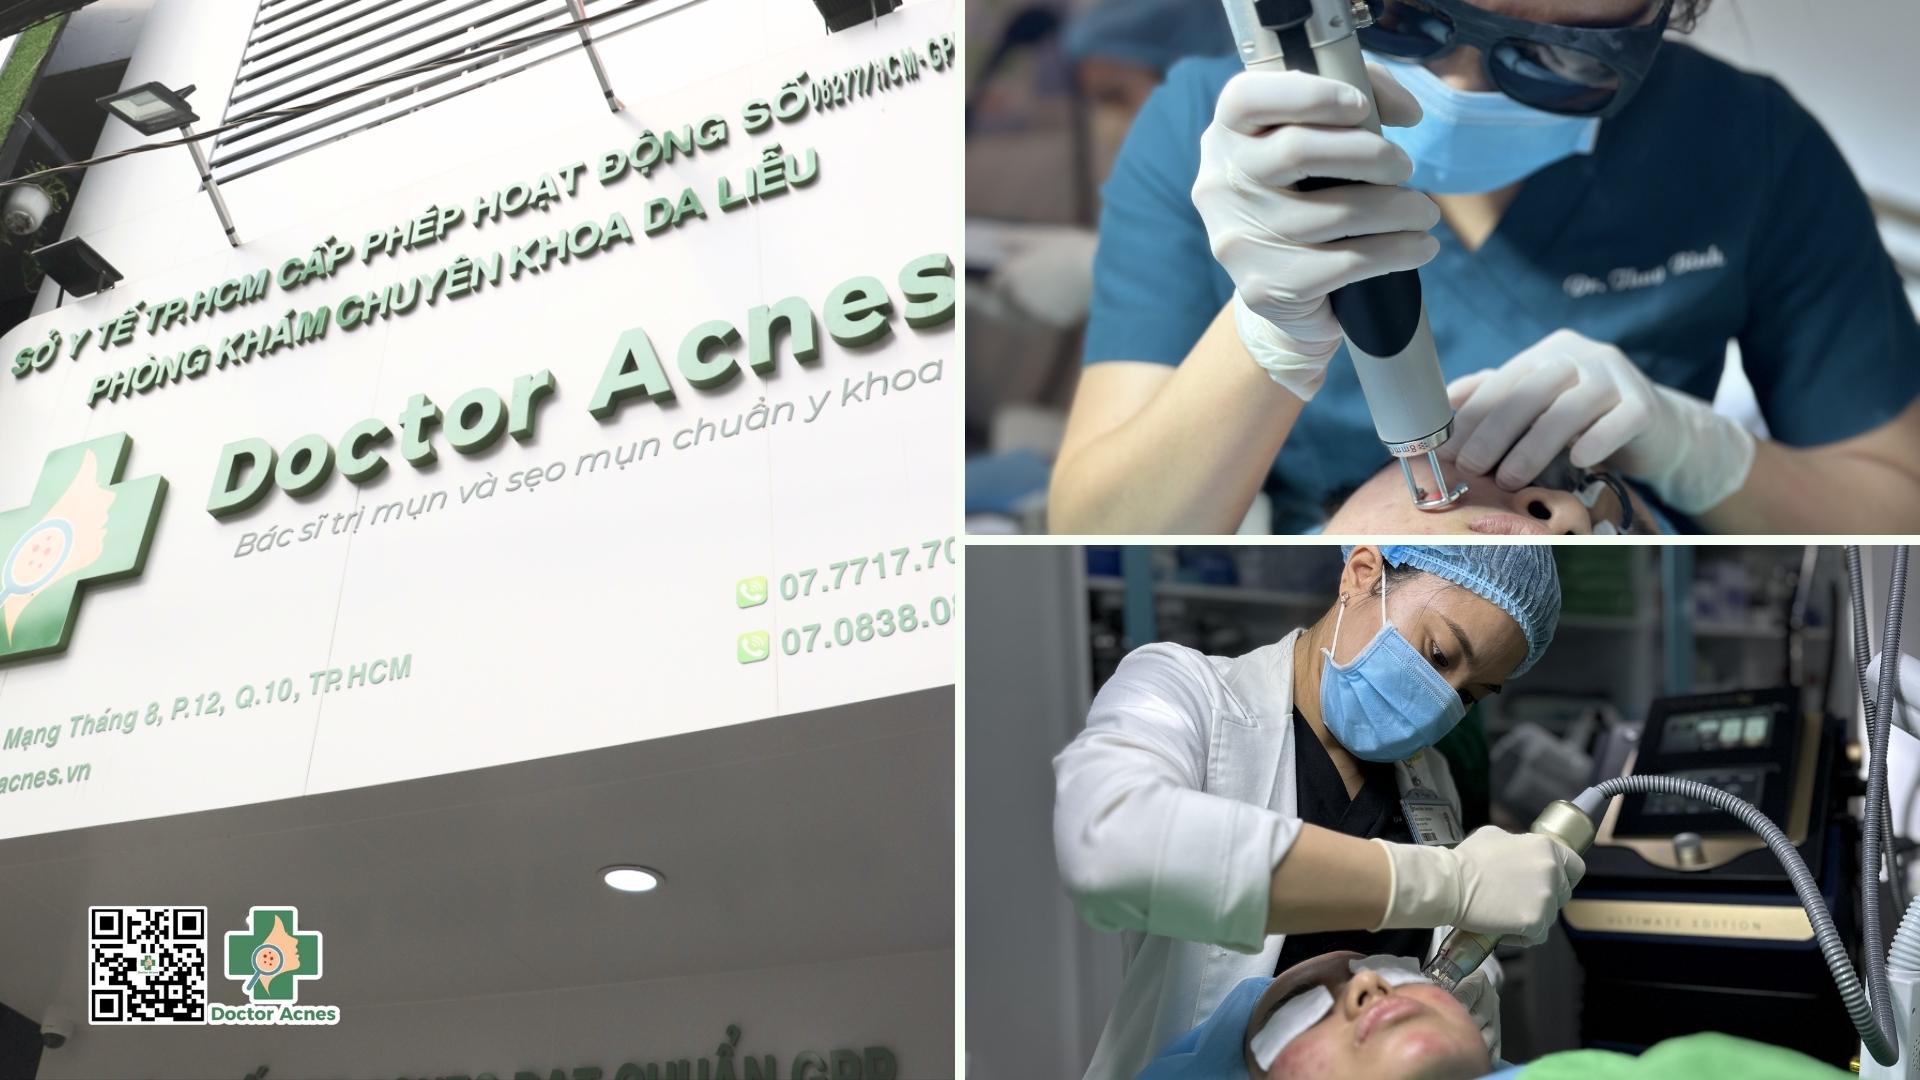 Phòng khám Da liễu Doctor Acnes – Bác sĩ trị mụn và sẹo mụn chuẩn y khoa